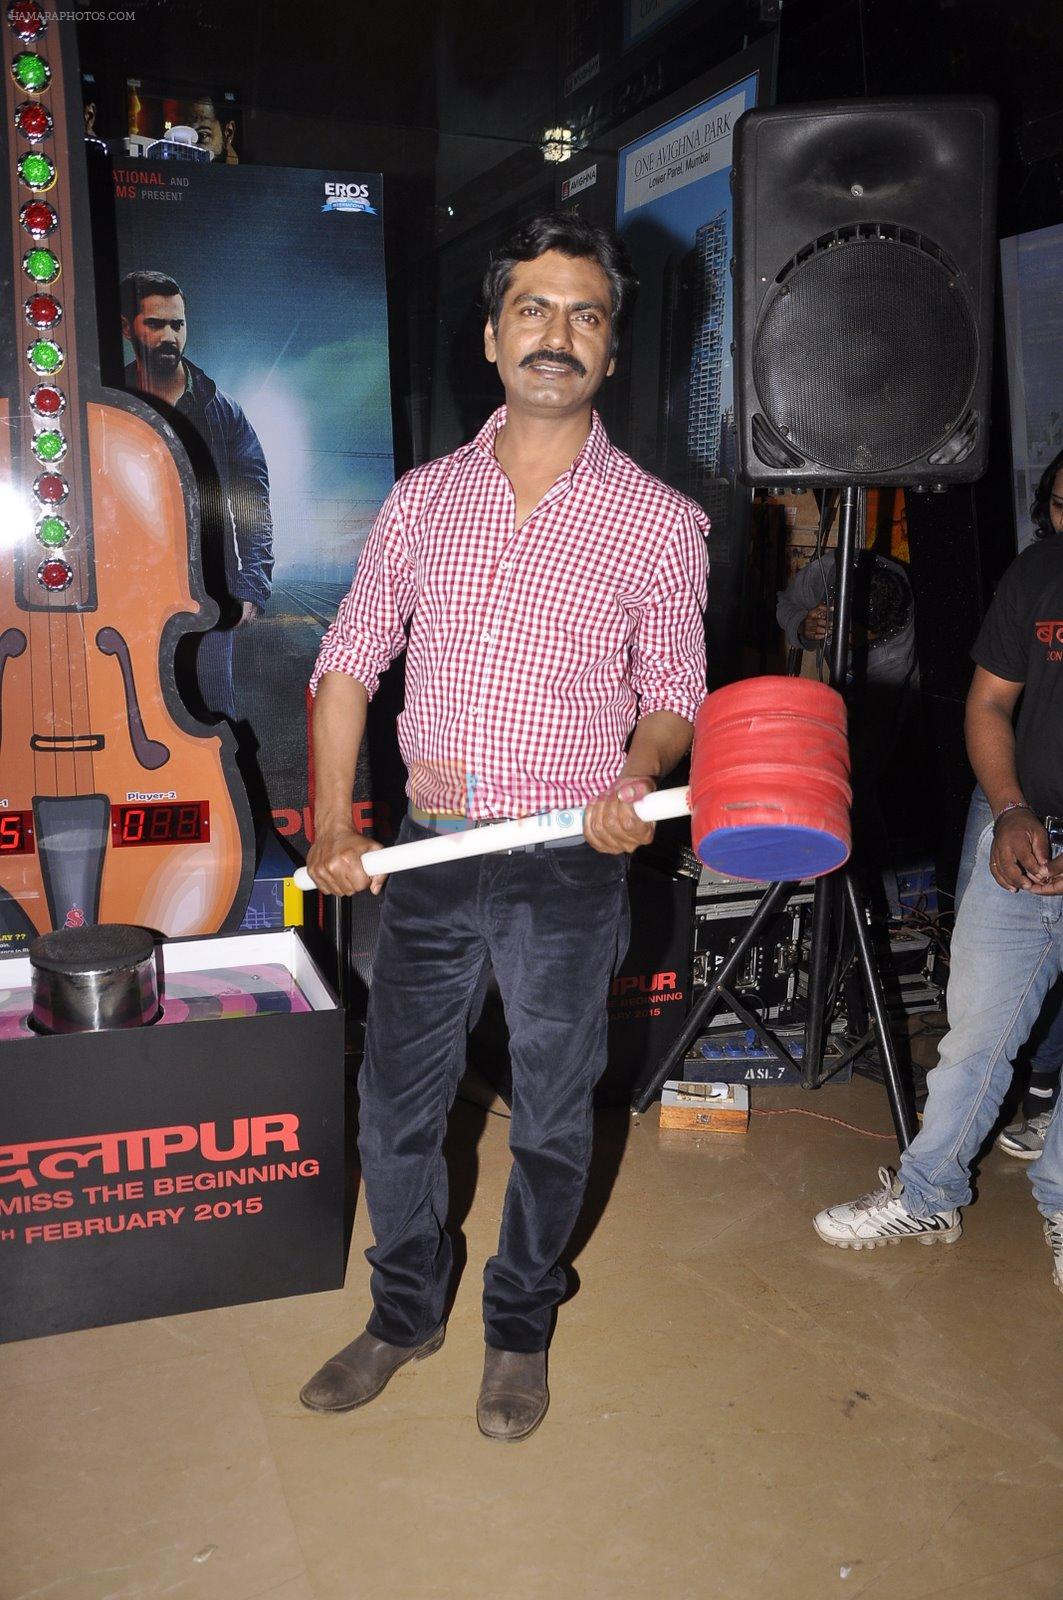 Nawazuddin Siddiqui at Badlapur promotions in PVR, Mumbai on 15th Feb 2015